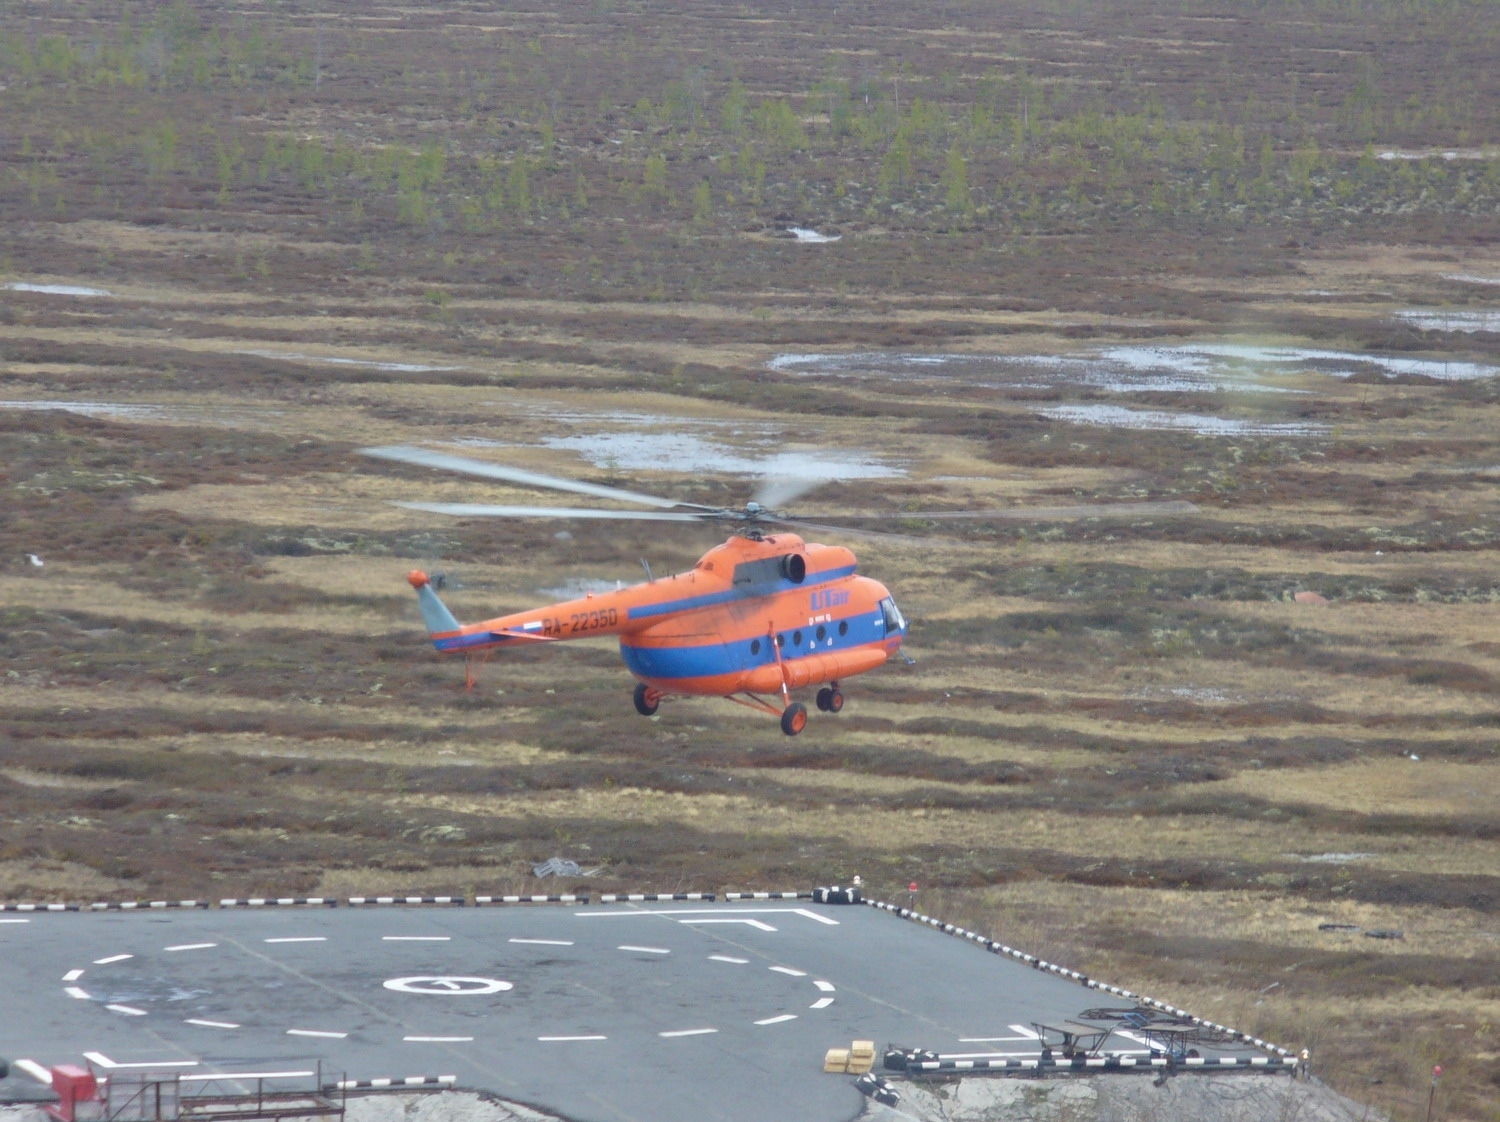 A RA-22350-es Mi-8T munka közben (fotó: russianplanes.net)